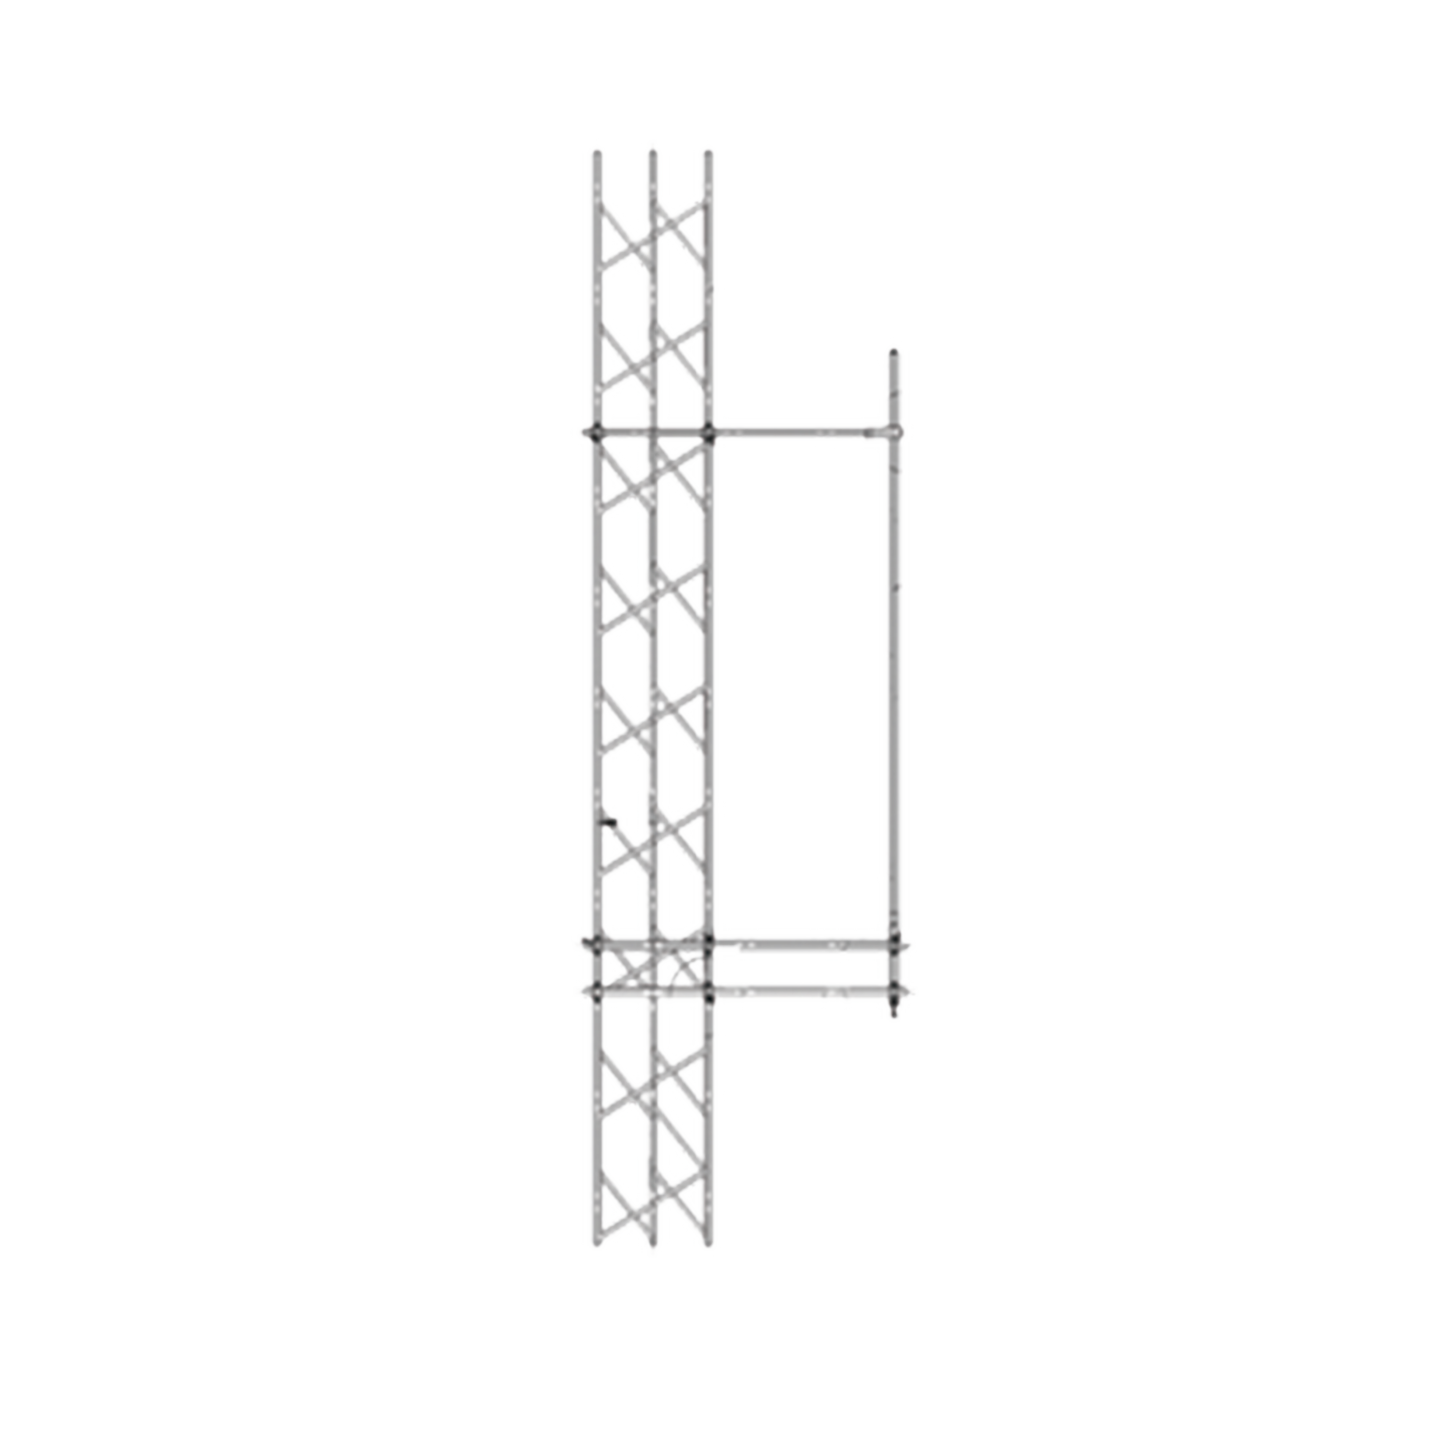 Montaje Lateral Ajustable en Kit para Montaje de Antenas de 6.35 cm. de Diámetro-Base y 91 cm. de Distancia de Separación a la Torre.